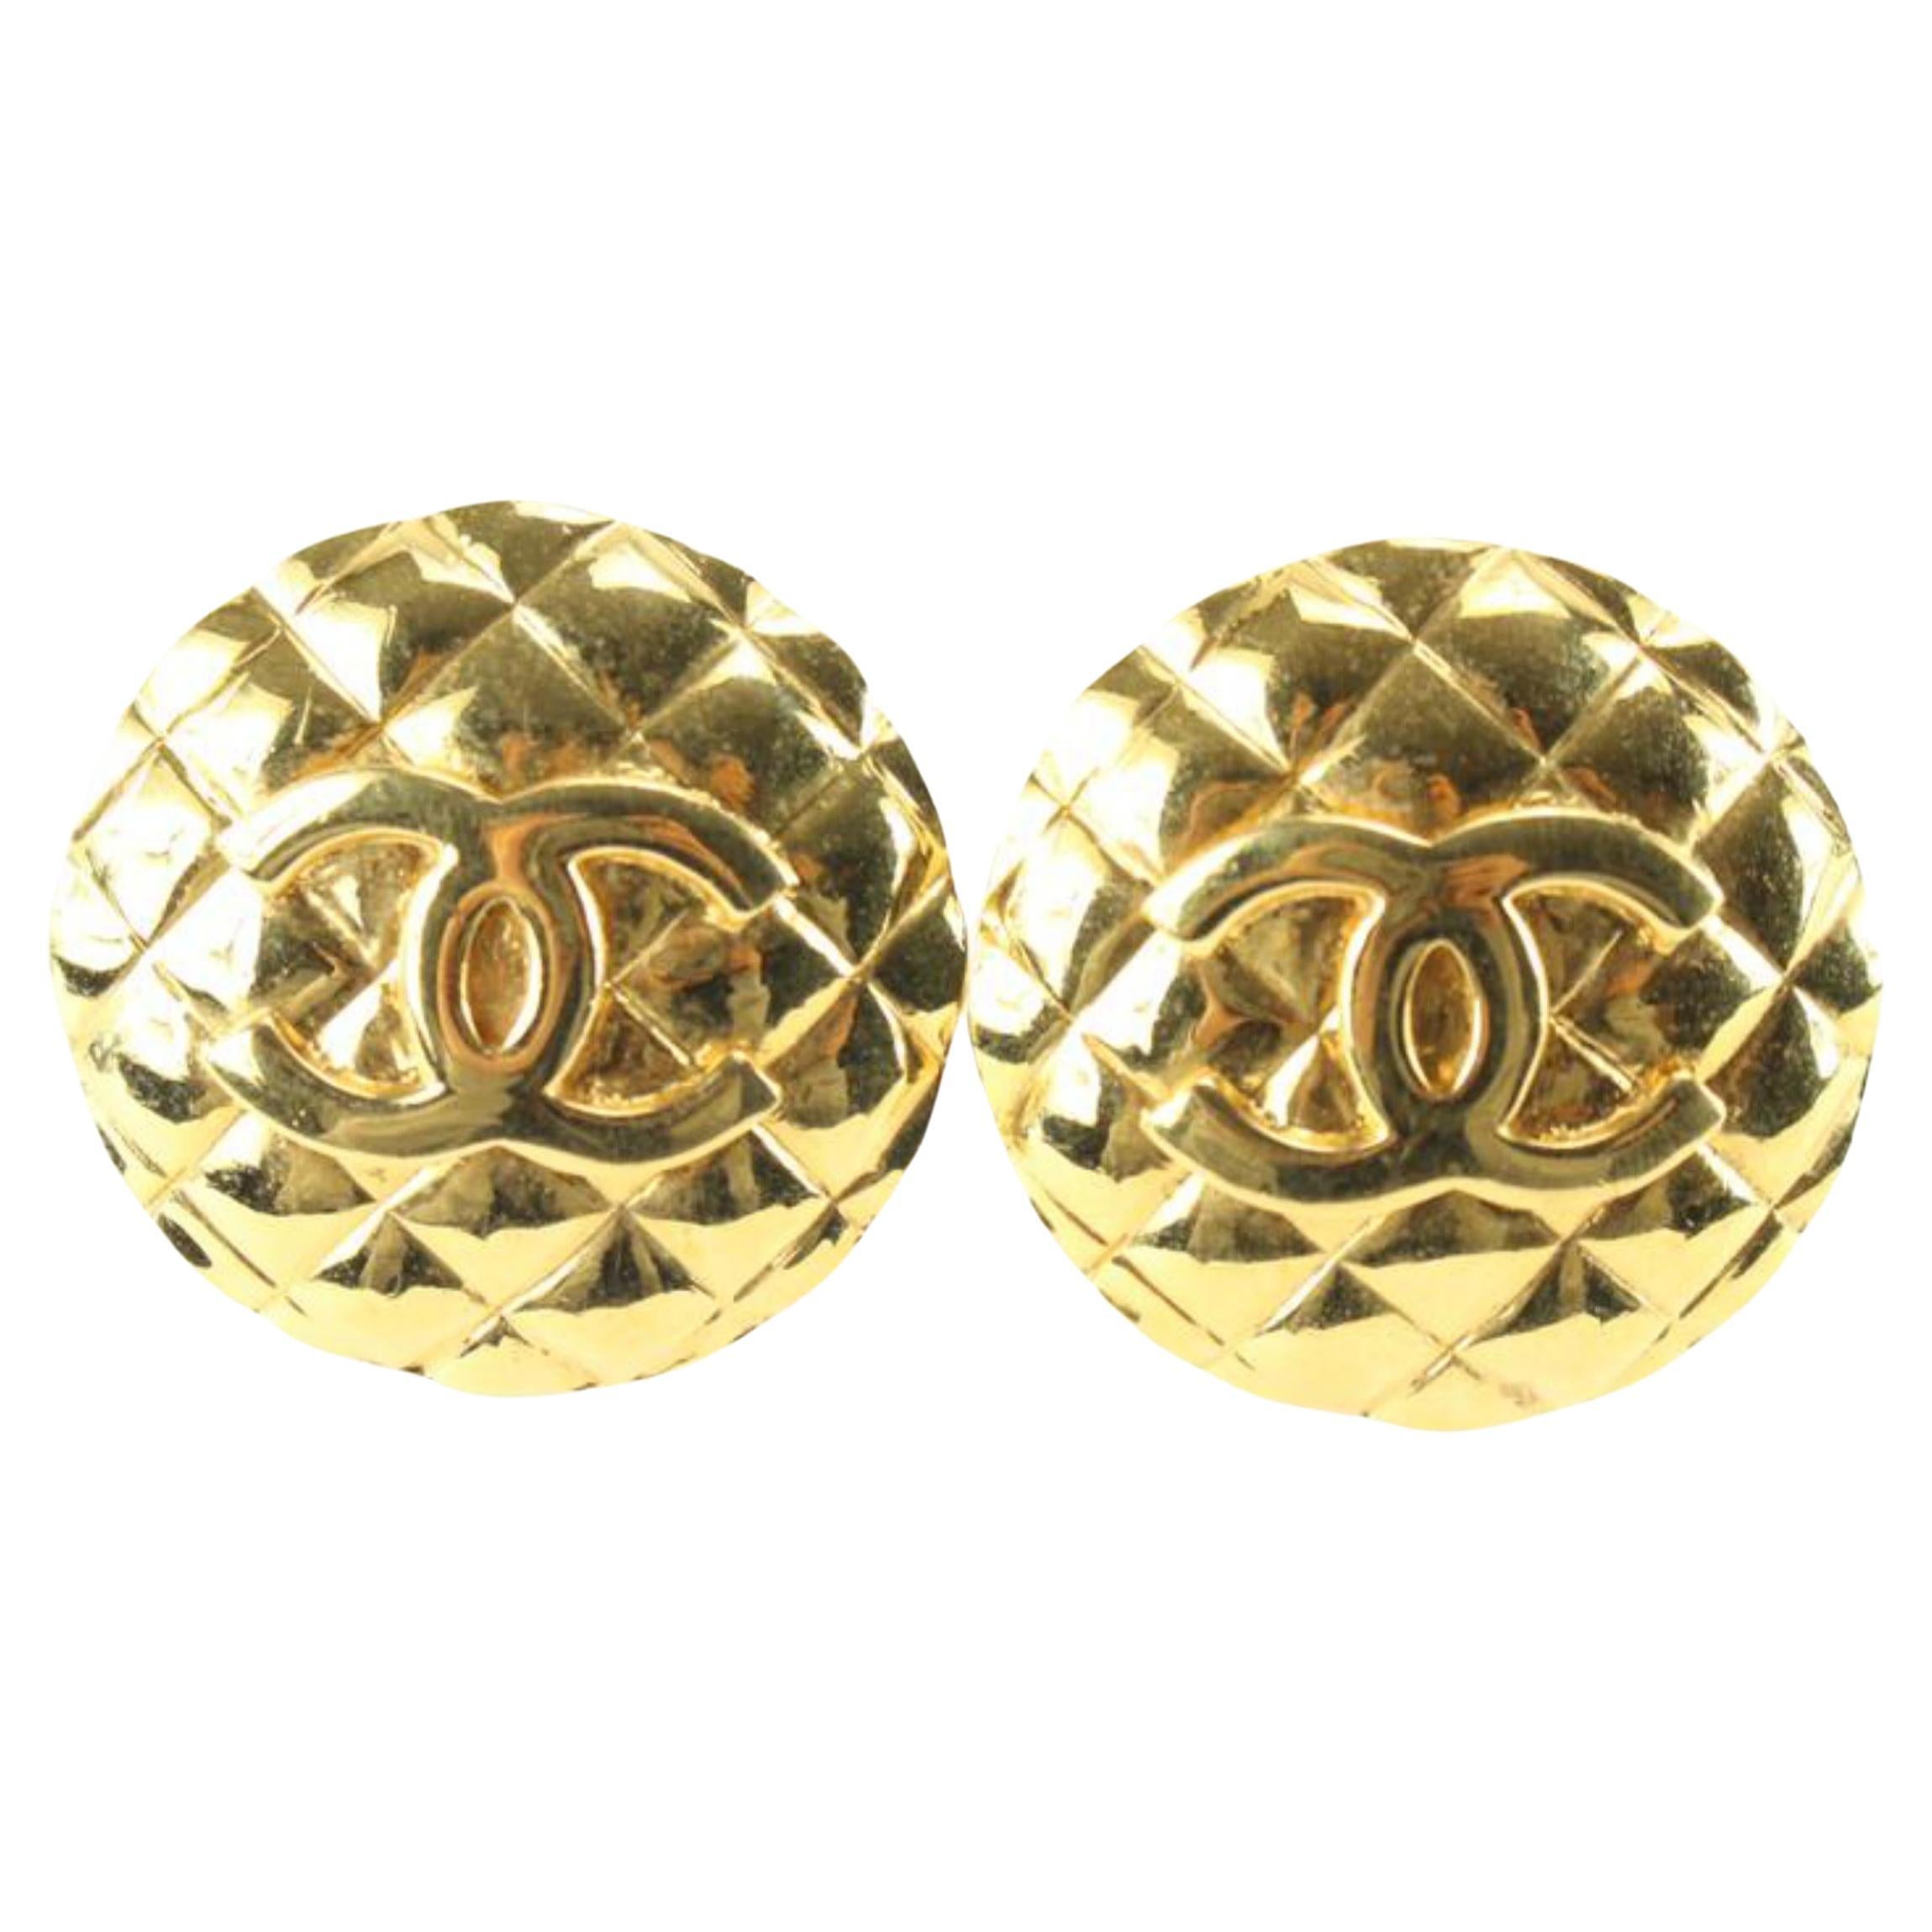 Chanel Boucles d'oreilles en plaqué or 24 carats avec logo CC matelassé 47ck825s